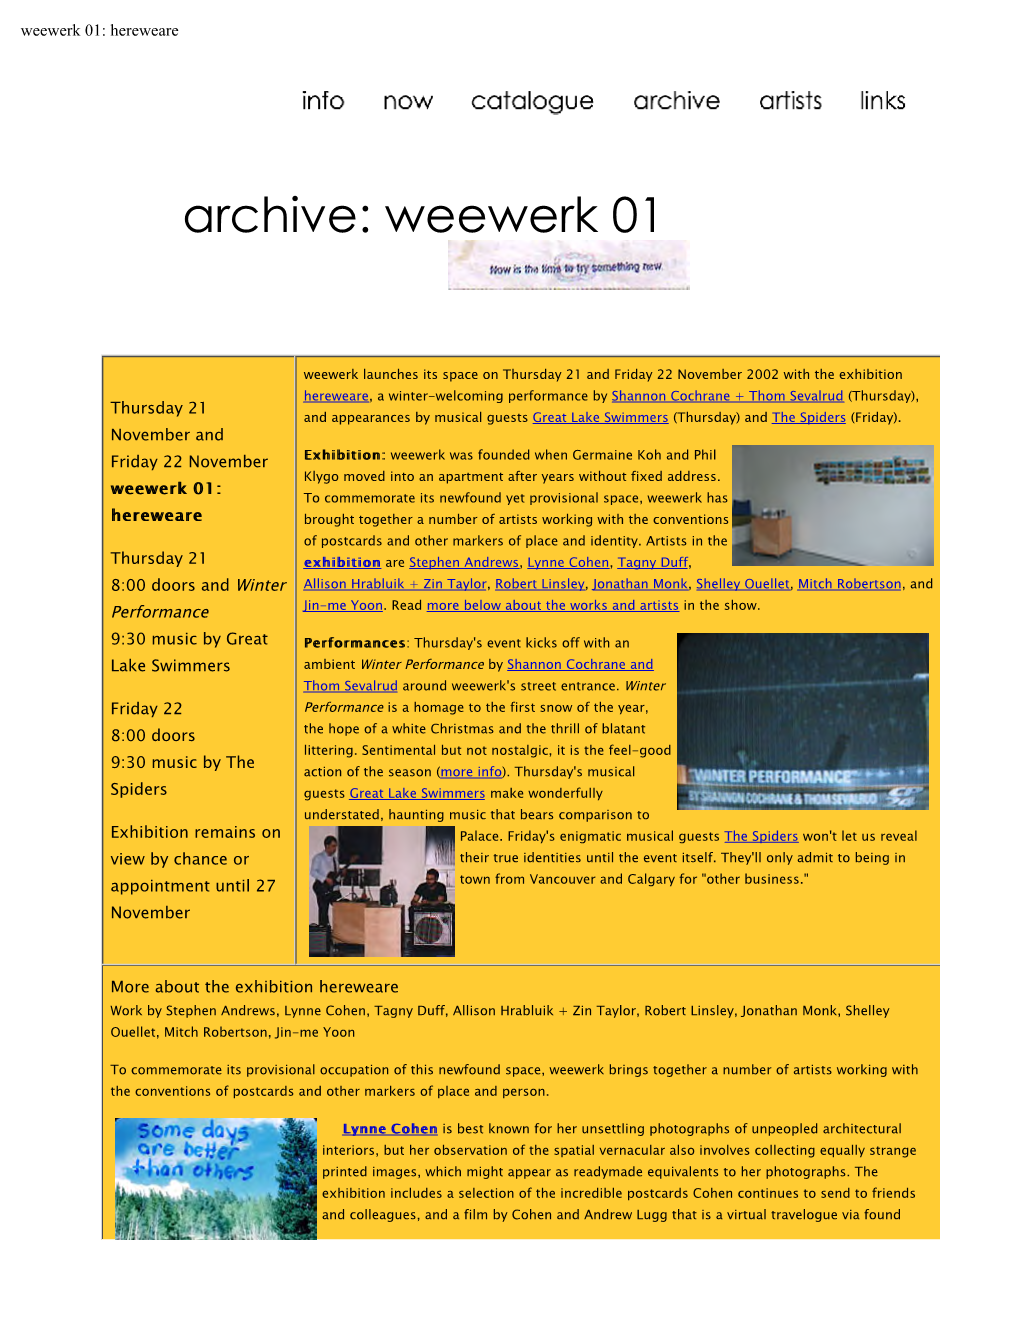 Weewerk 01: Hereweare